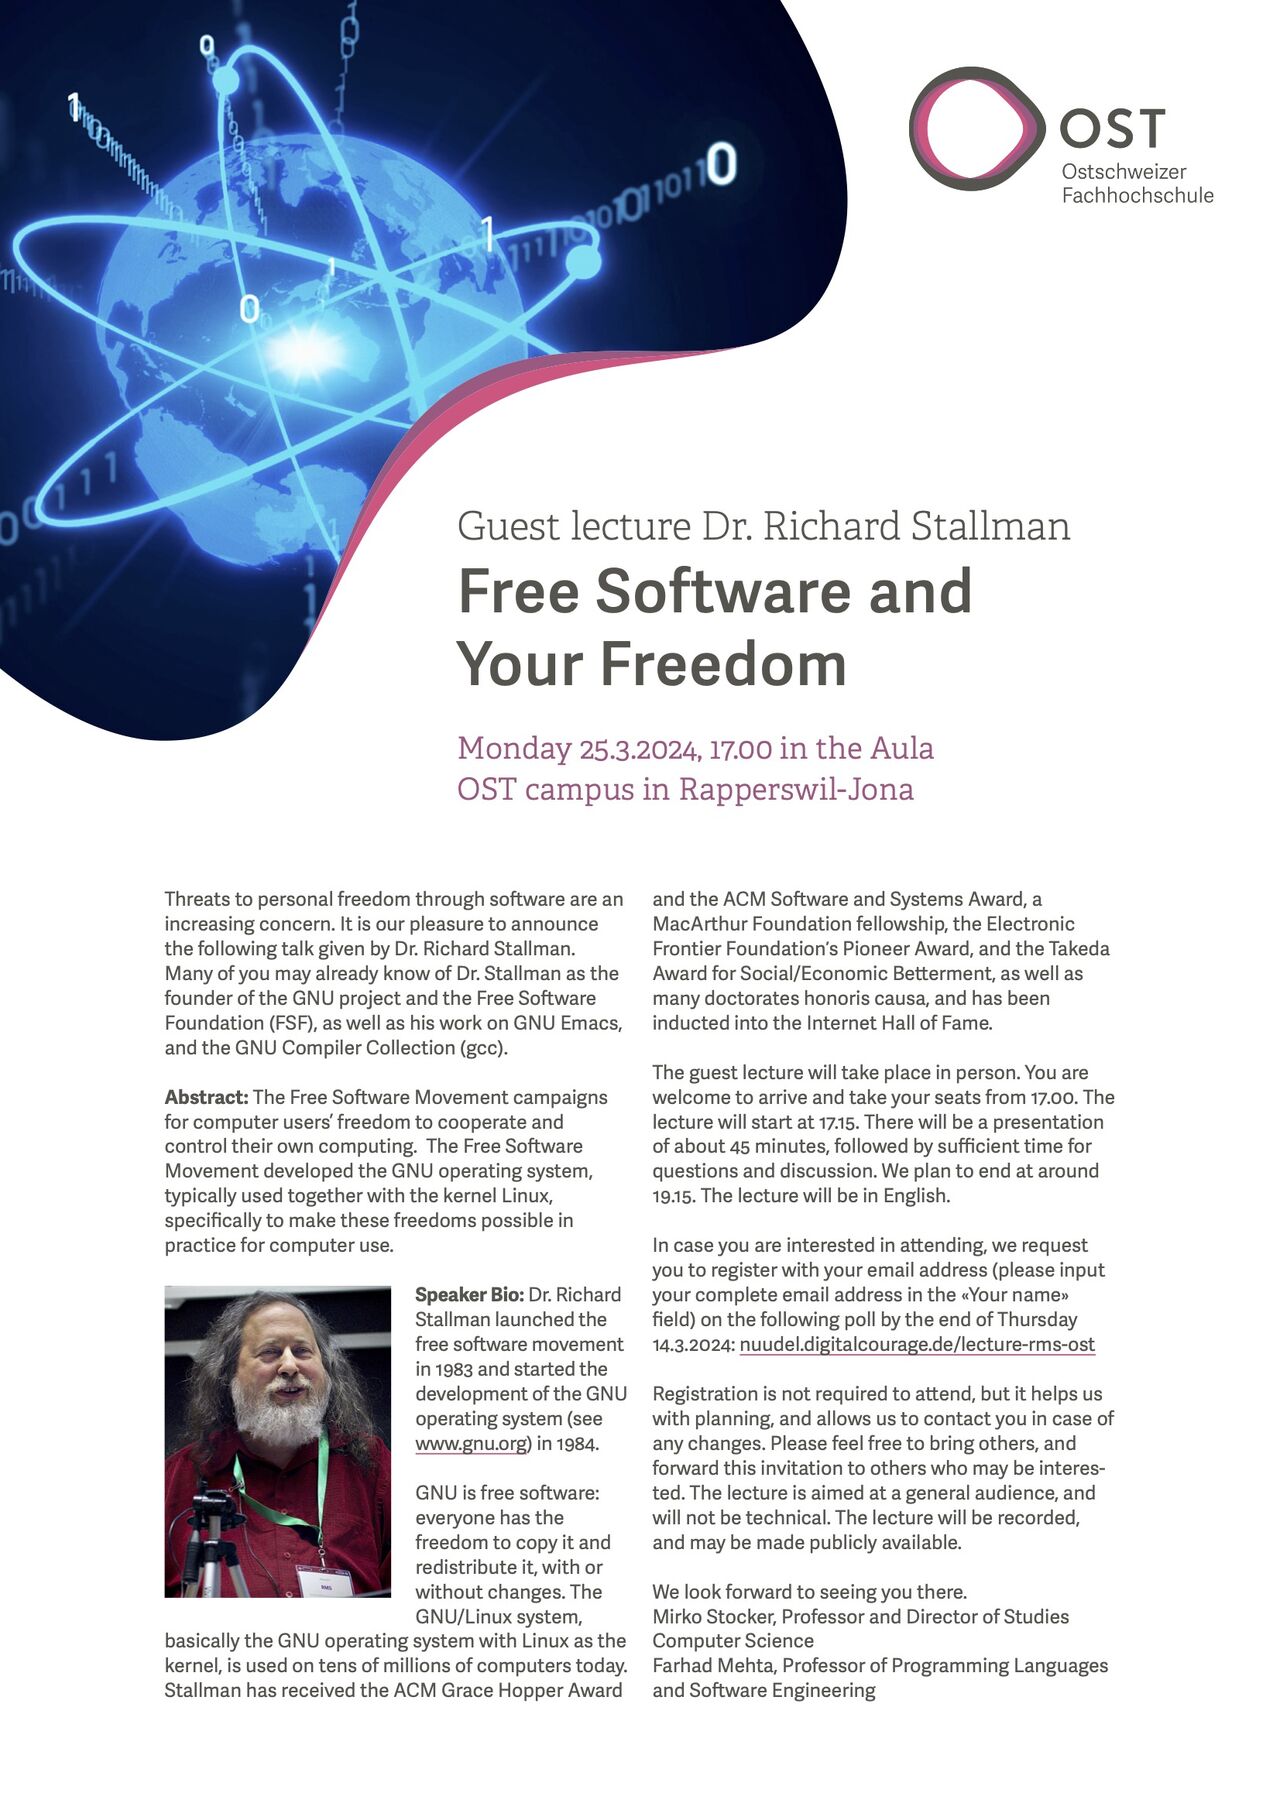 Richard Stallman's abstract